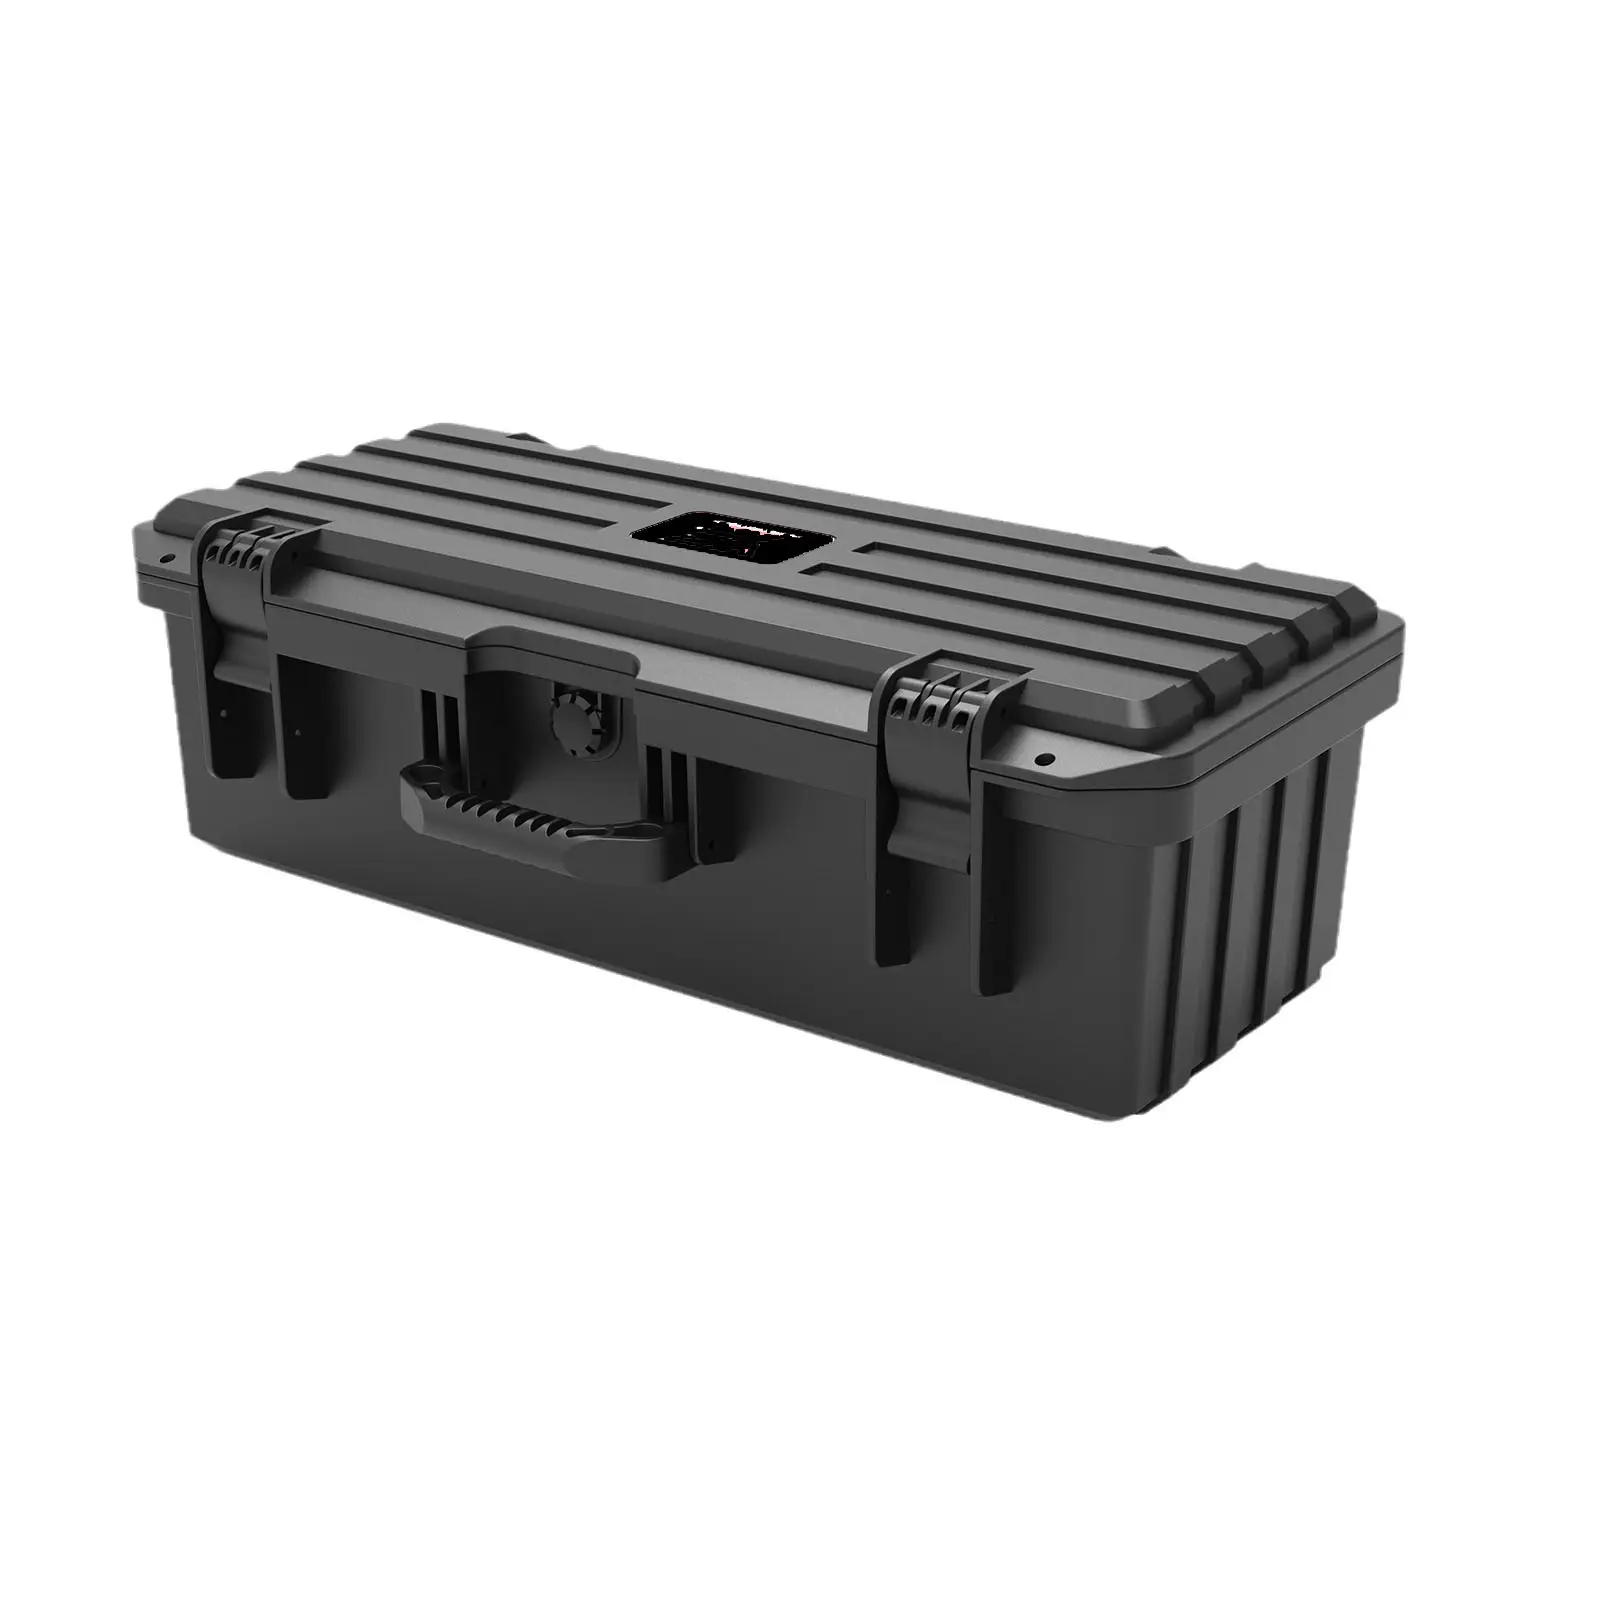 Nouveau boîtier de sécurité Boîte à outils portable Boîte d'équipement de photographie en plastique Boîte de sécurité numérique étanche